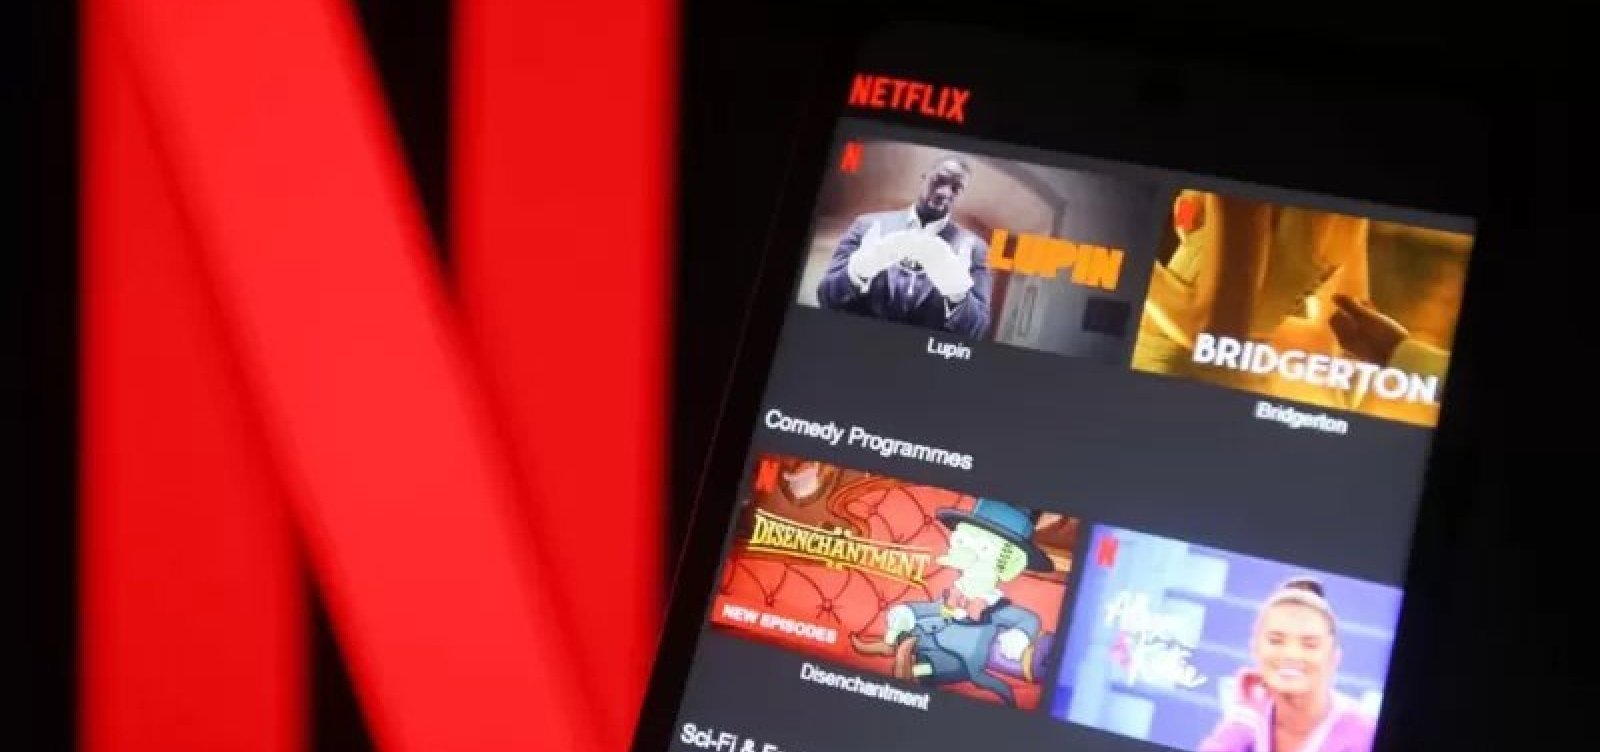 Em nova rodada de cortes, Netflix demite mais 300 funcionários